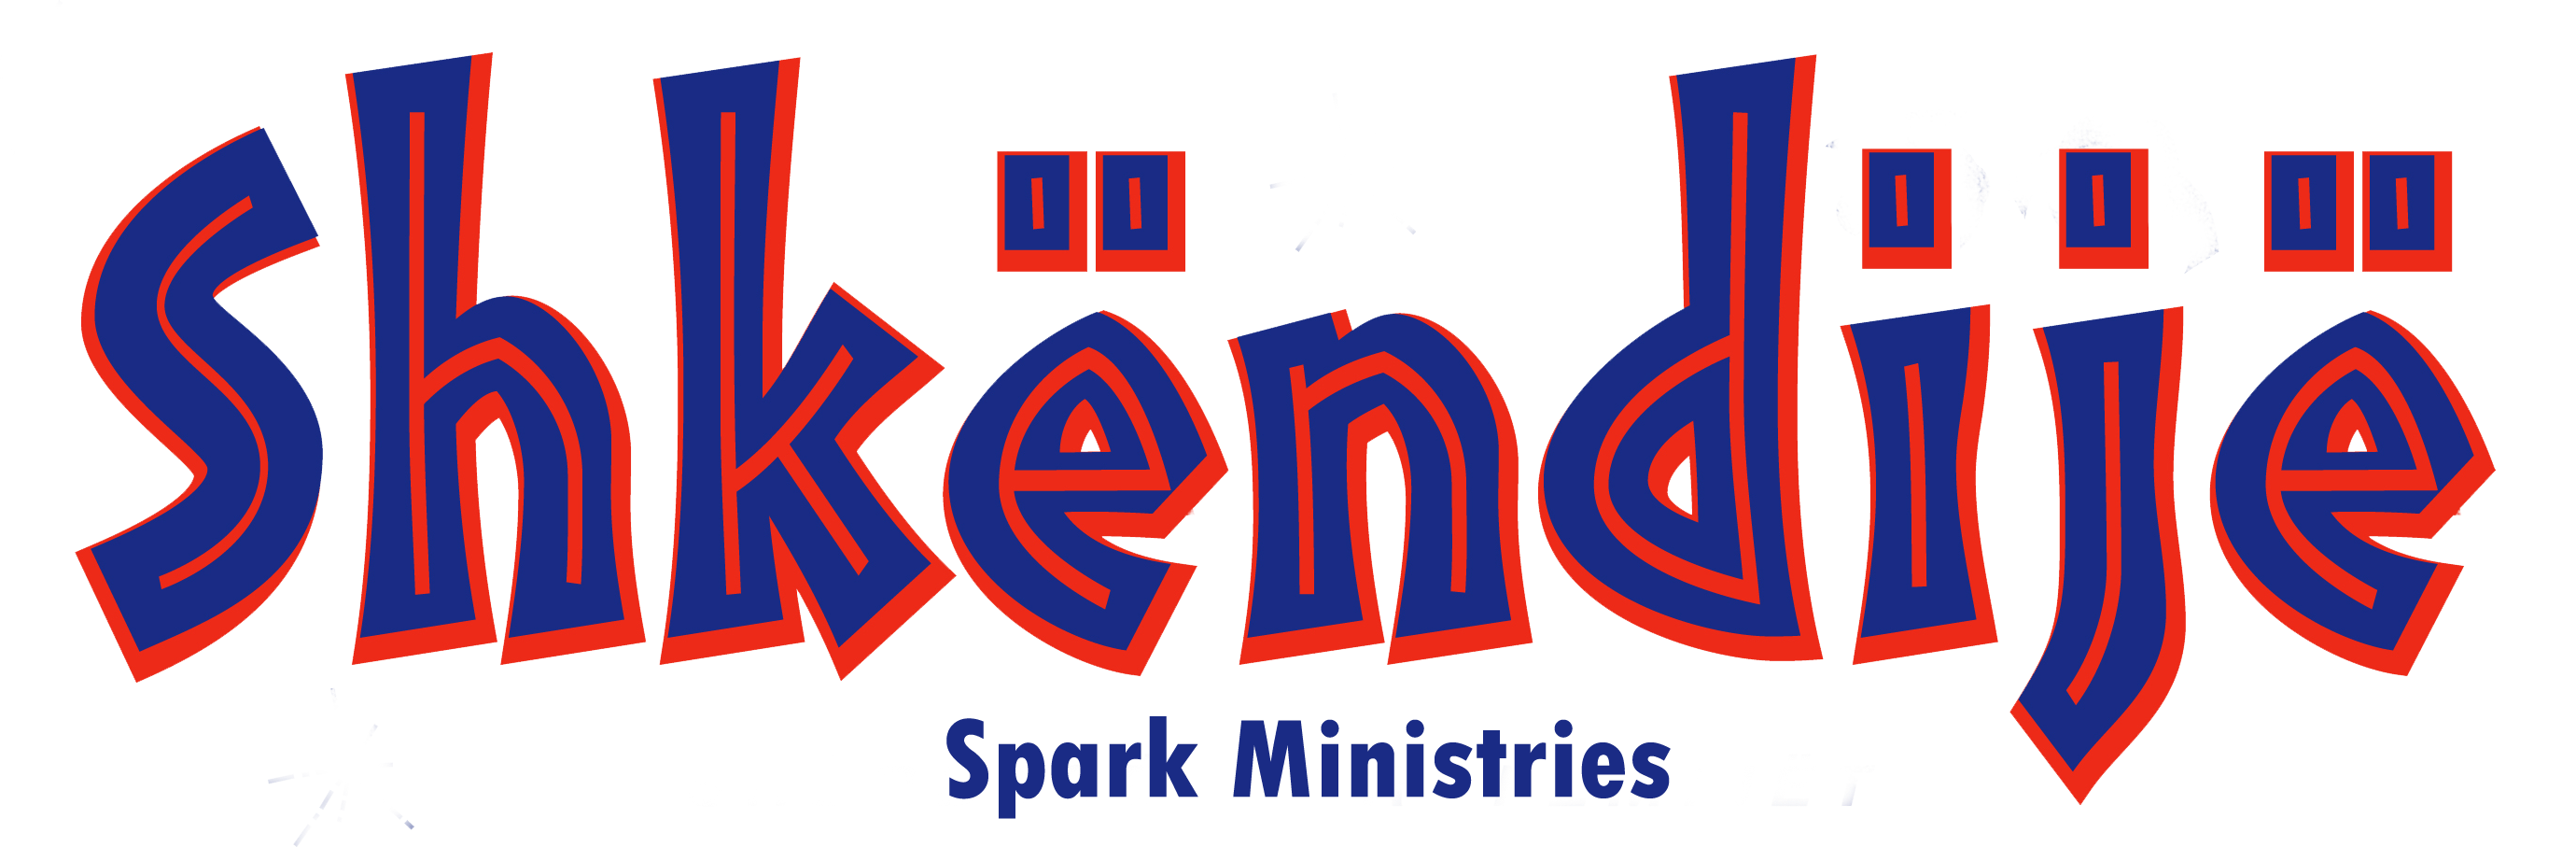 Spark Ministries (Shkendije) - logo